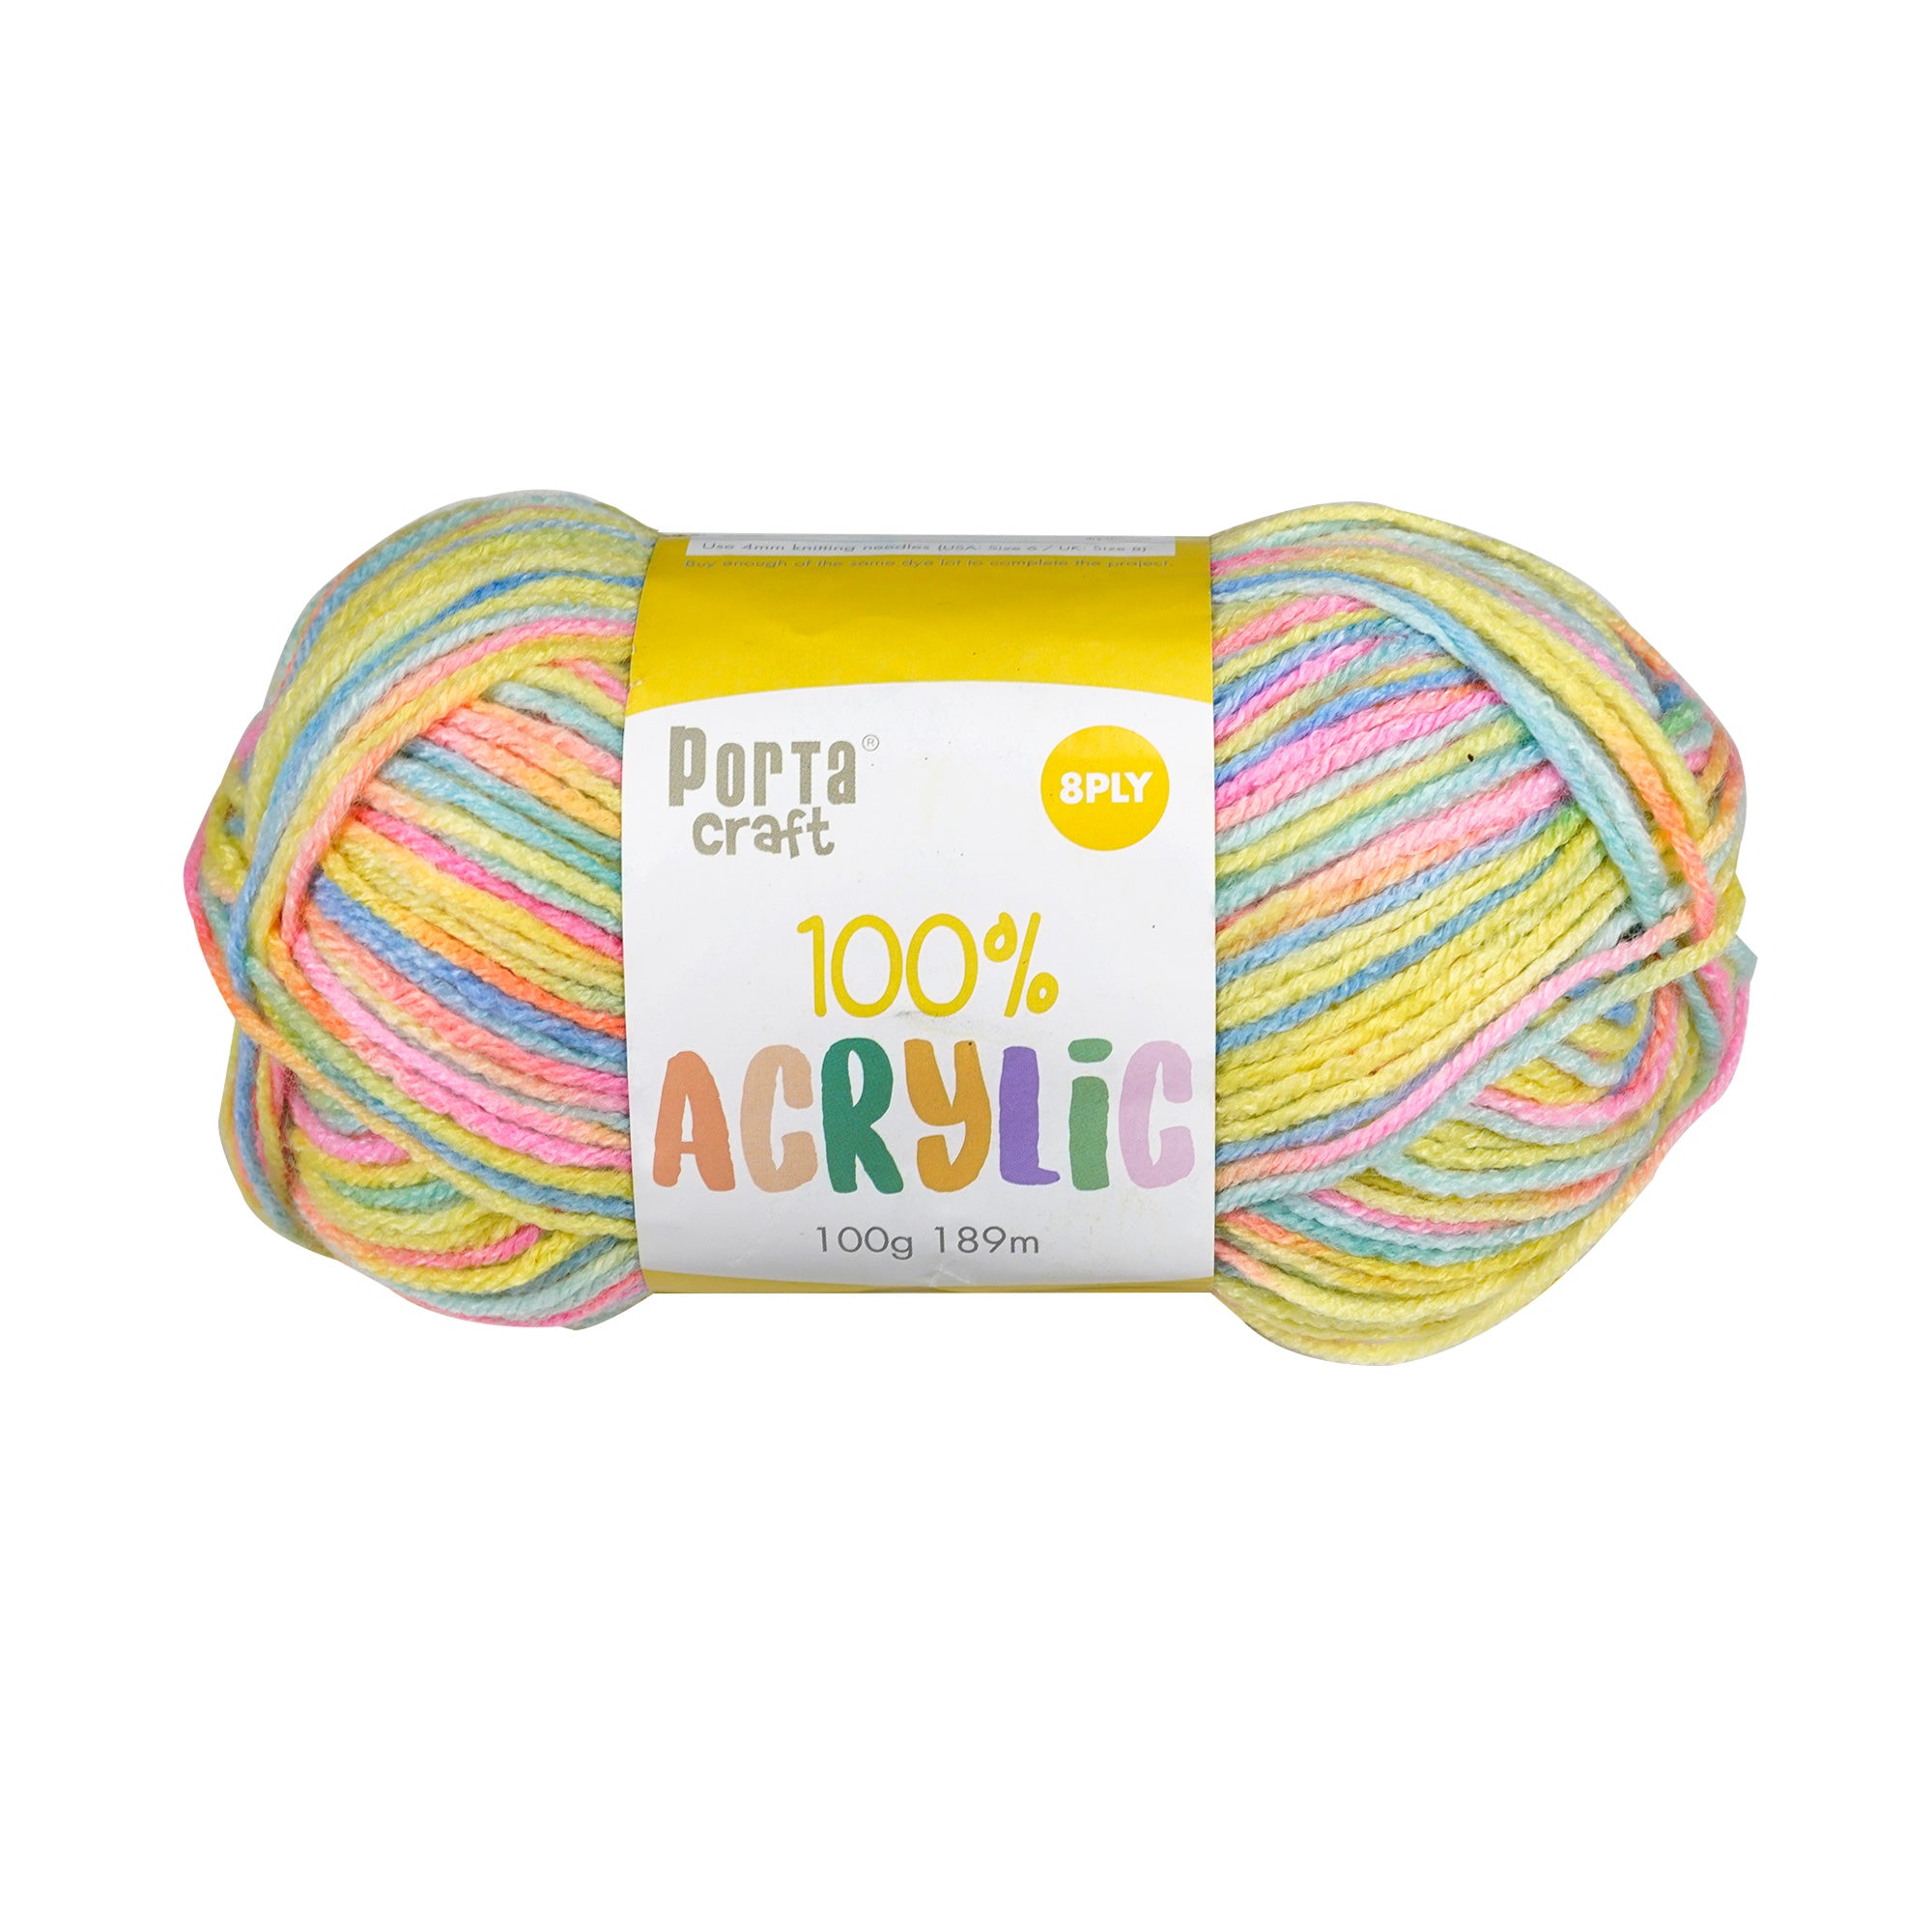 Porta Craft Acrylic Yarn 100% 100Gm 189M 8Ply Mult Rainbow - VC